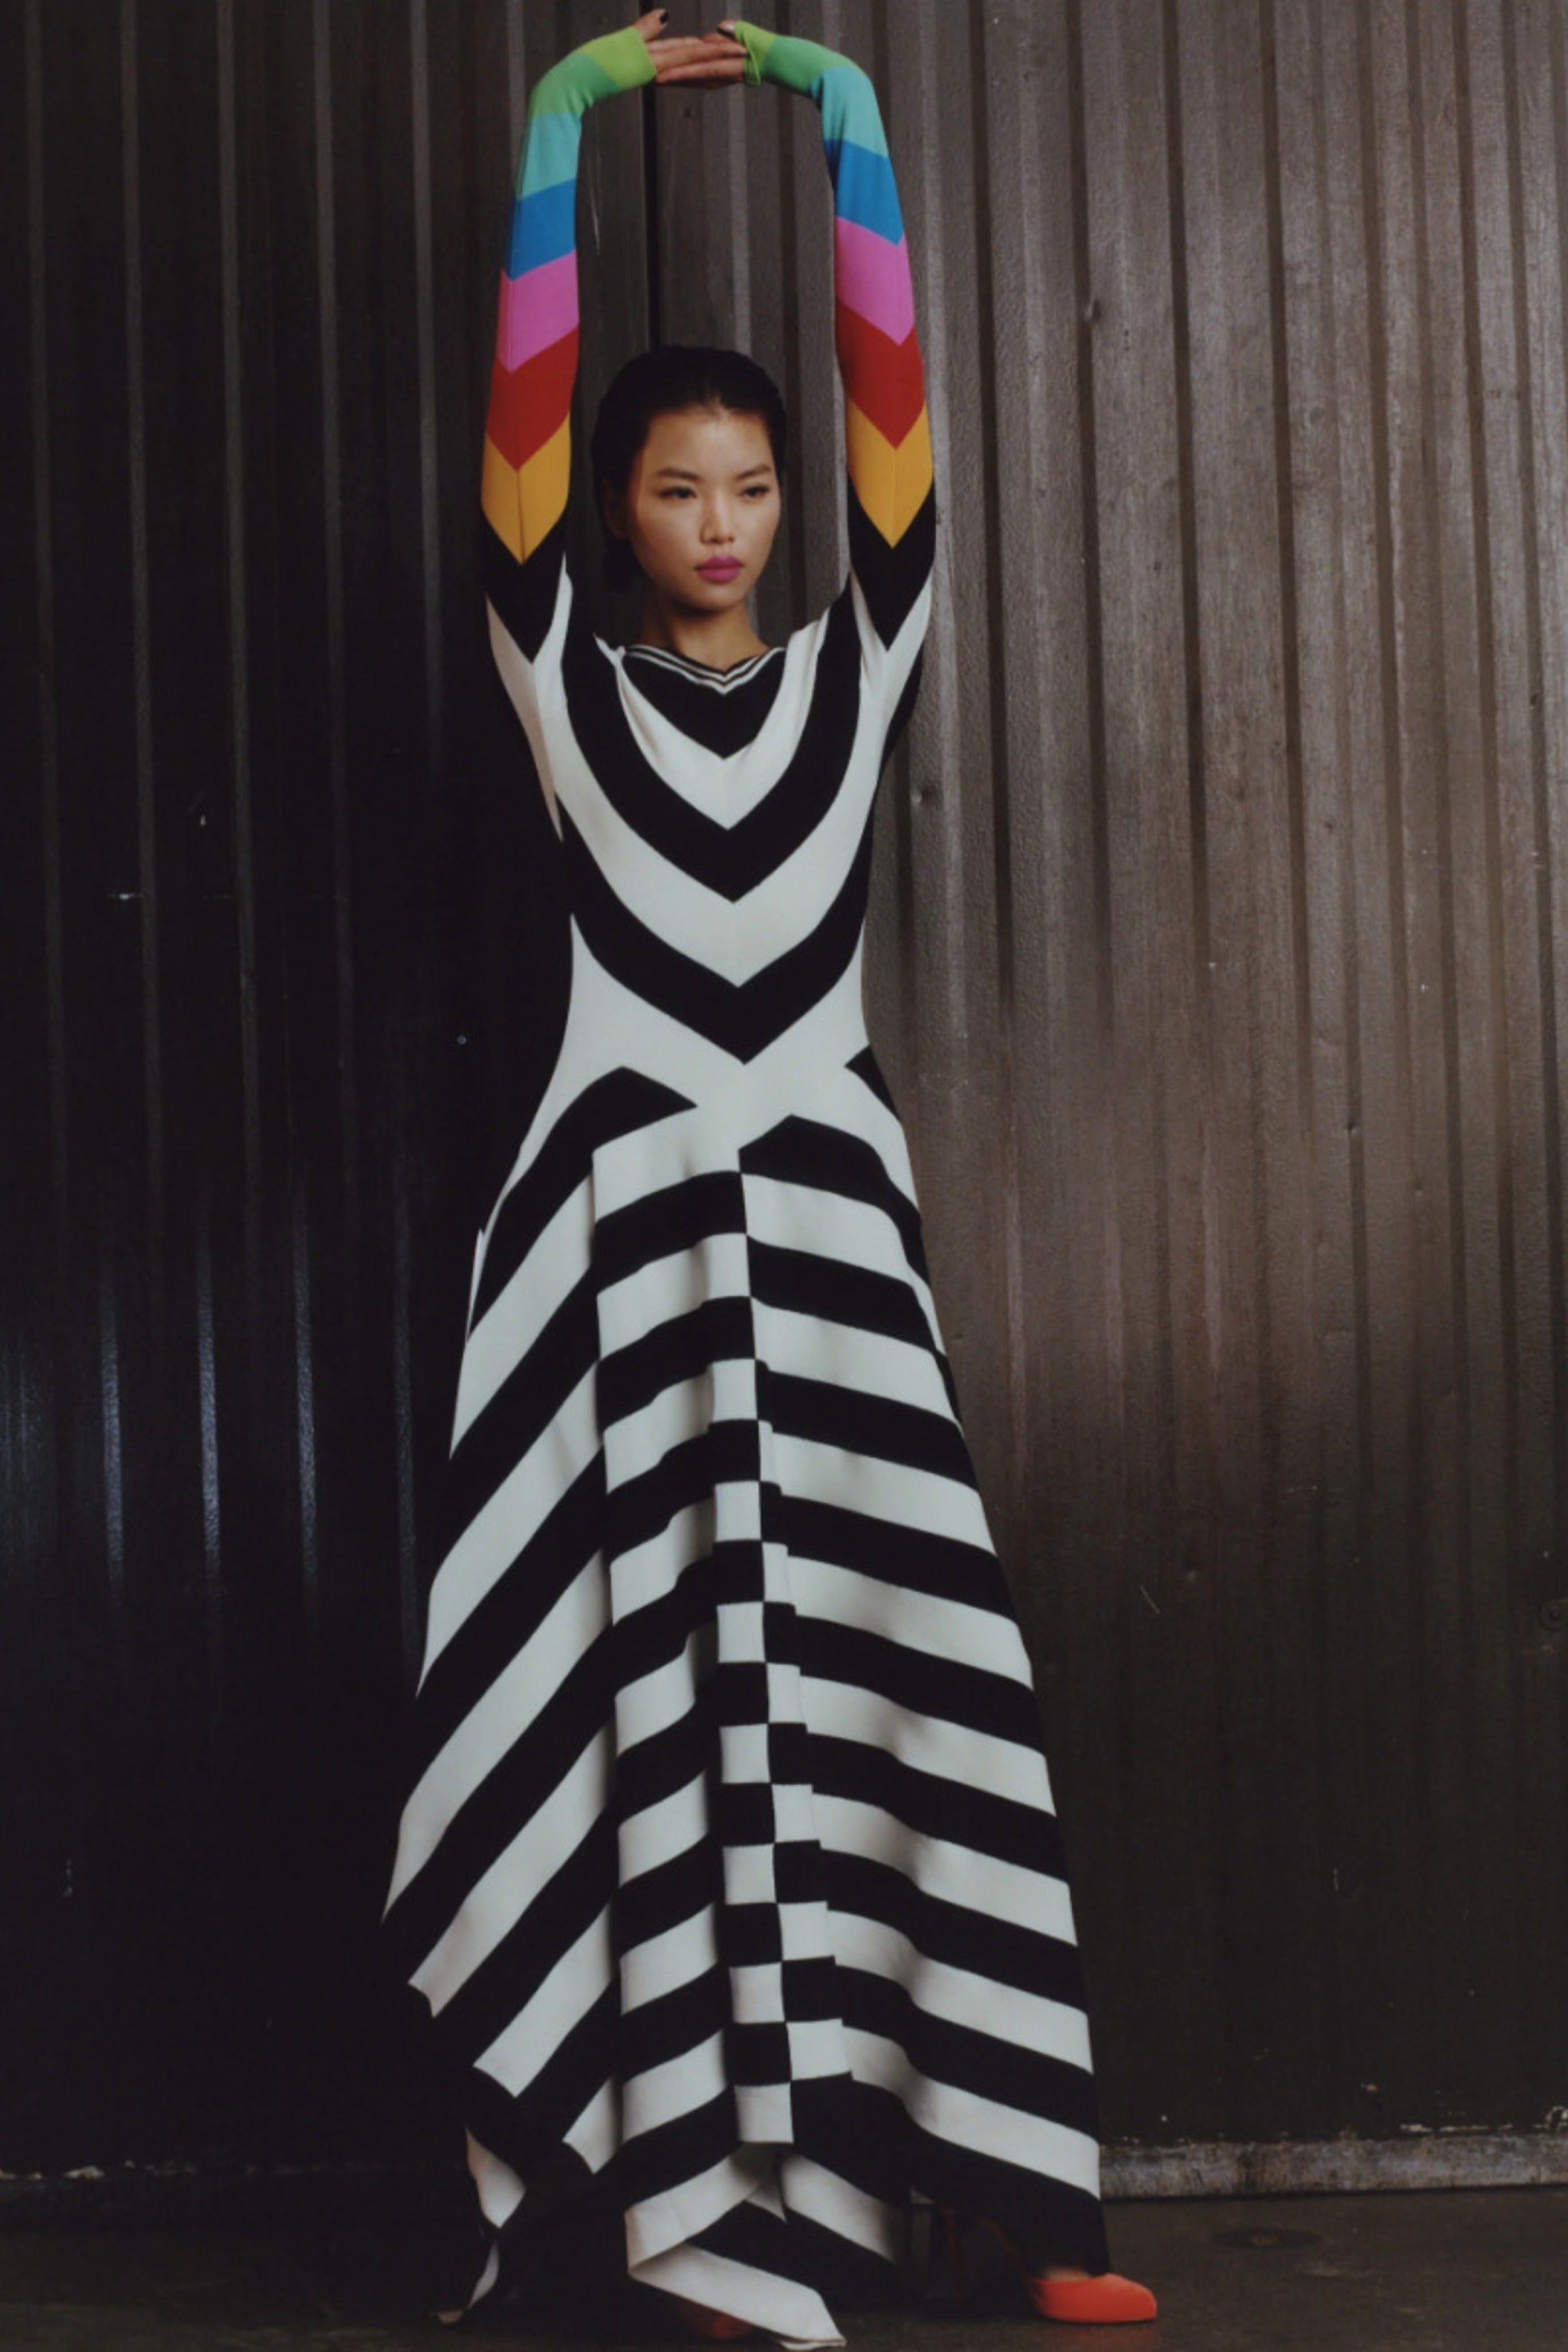 Stripe Knit Maxi Dress